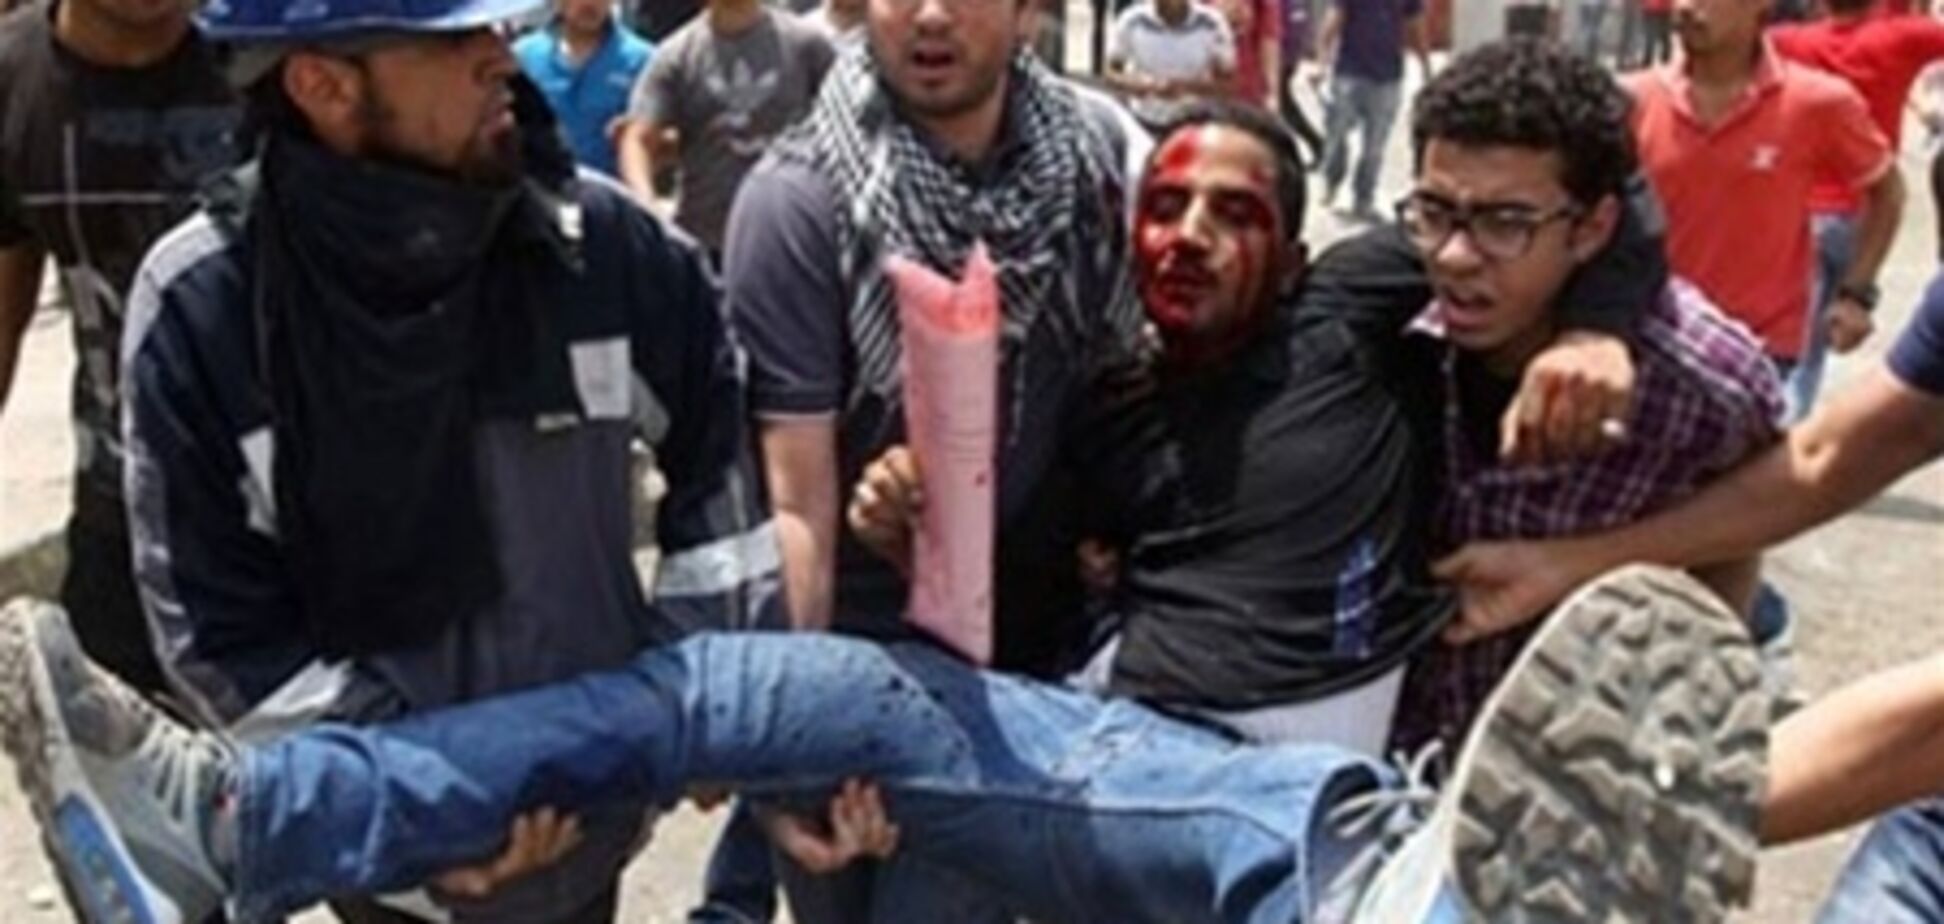 ЗМІ: в Єгипті протестуючих оперували без анестезії